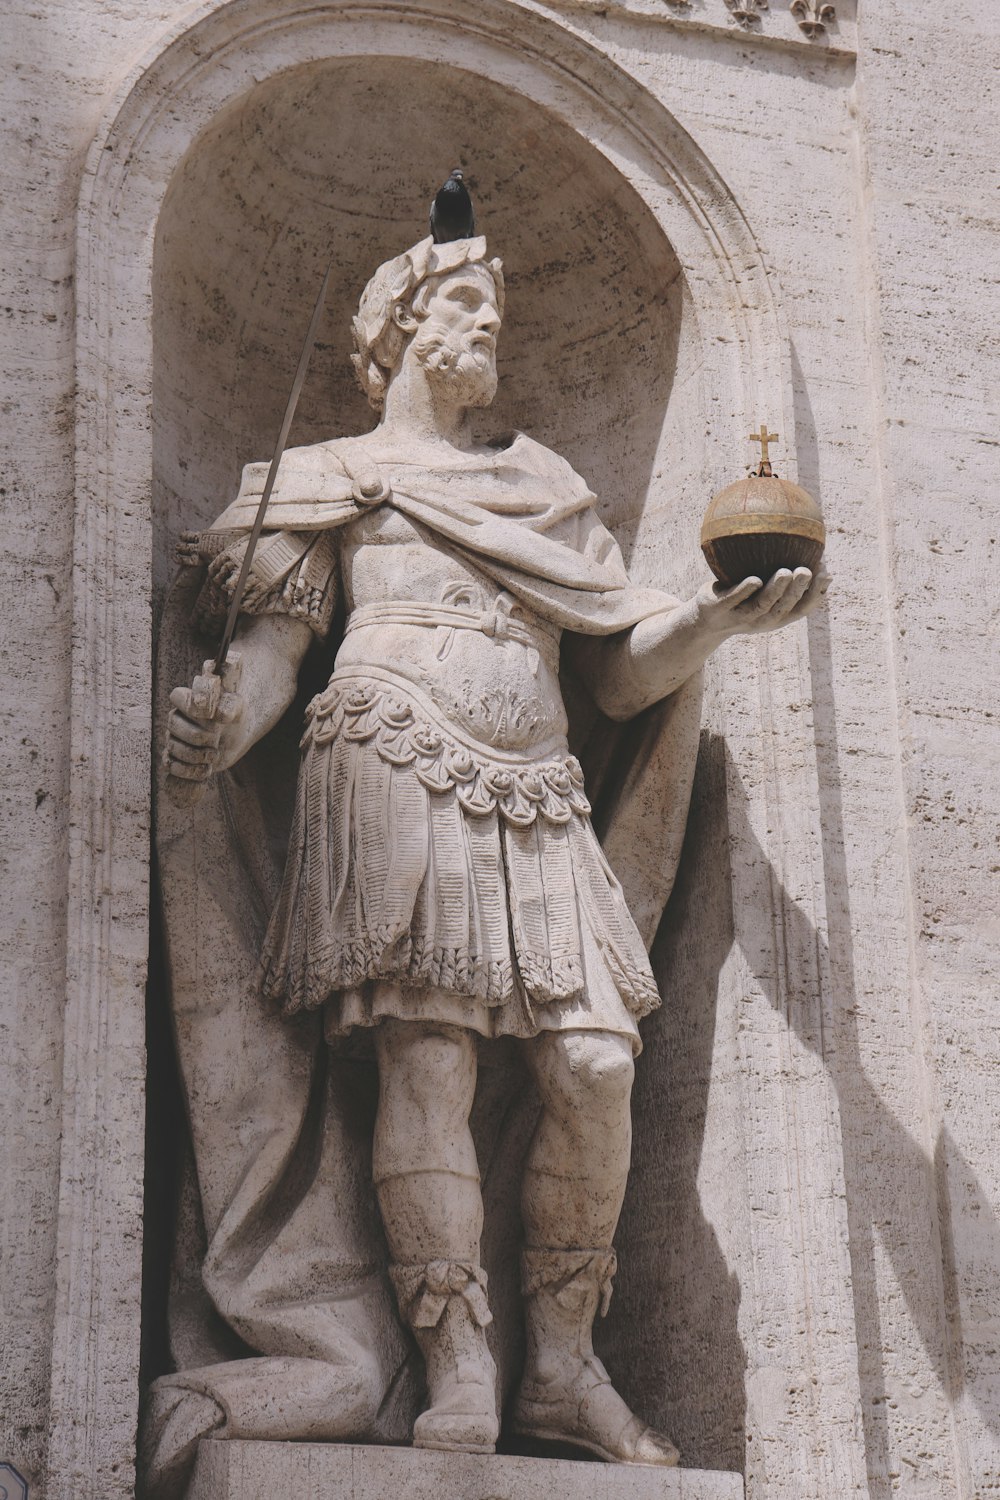 Statue di carlo magno in rome, italy photo – Free Grey Image on Unsplash